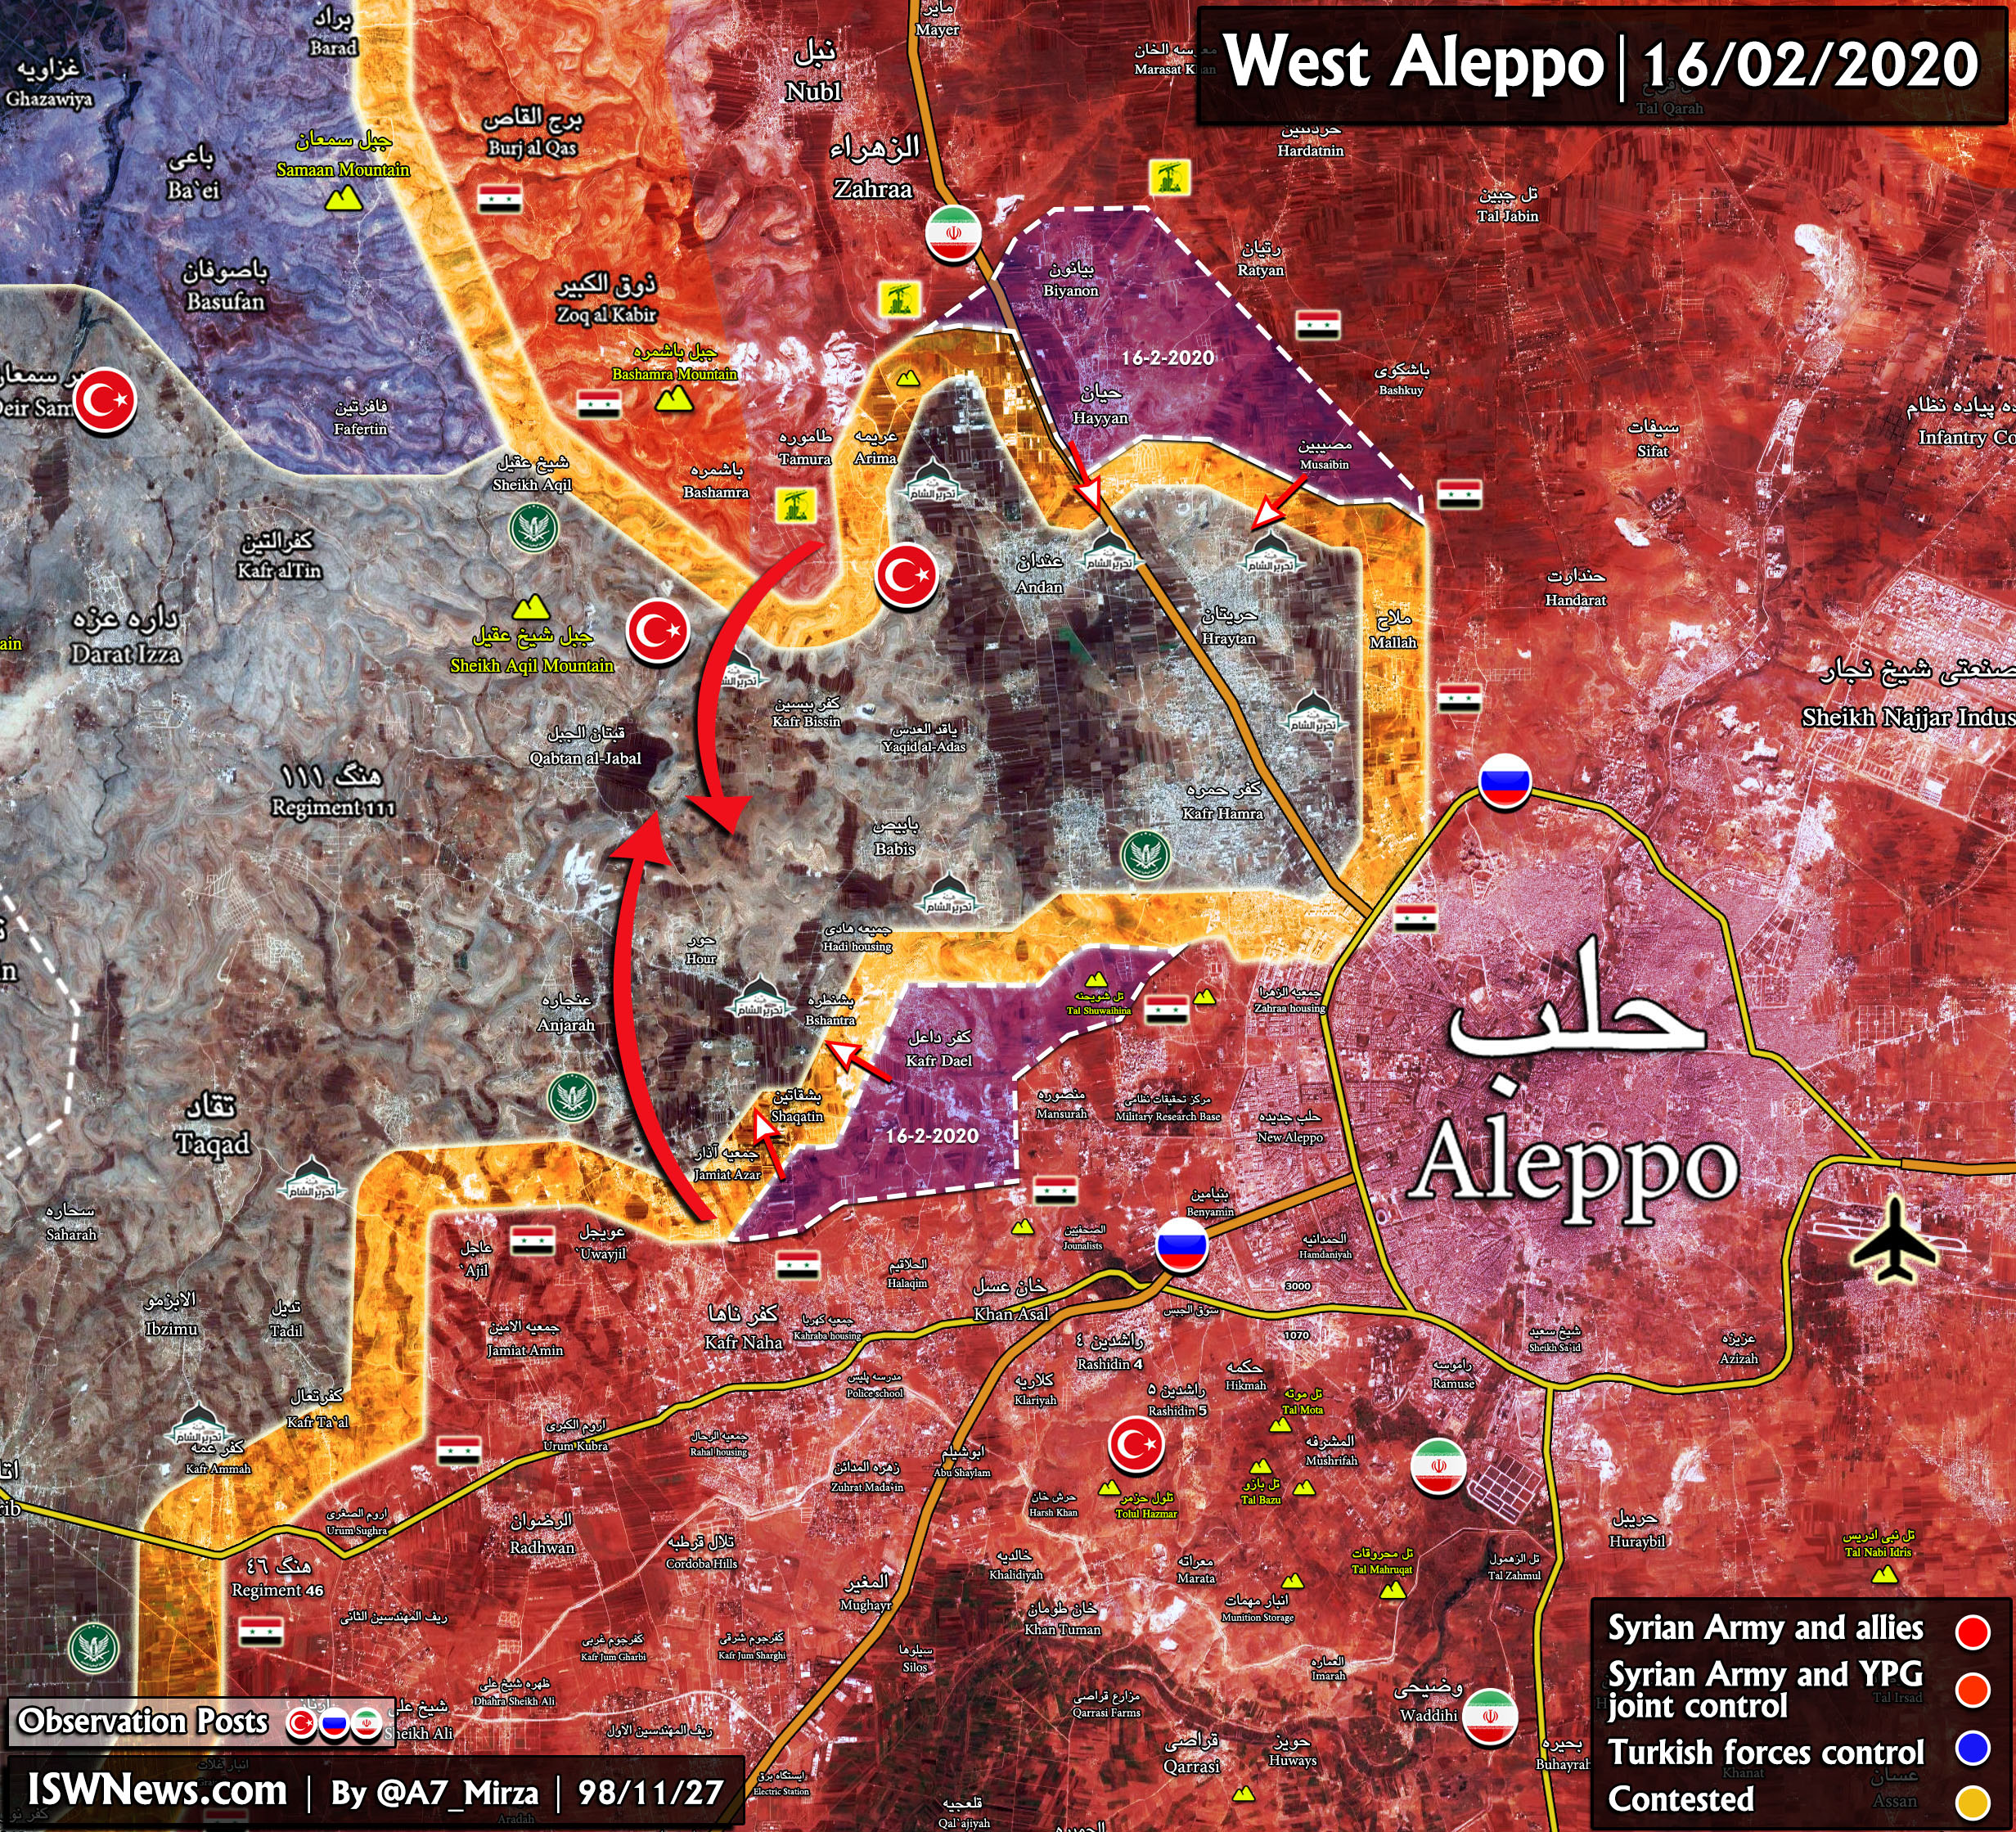 Northern-Idlib-Western-Aleppo-copy-2-2.jpg